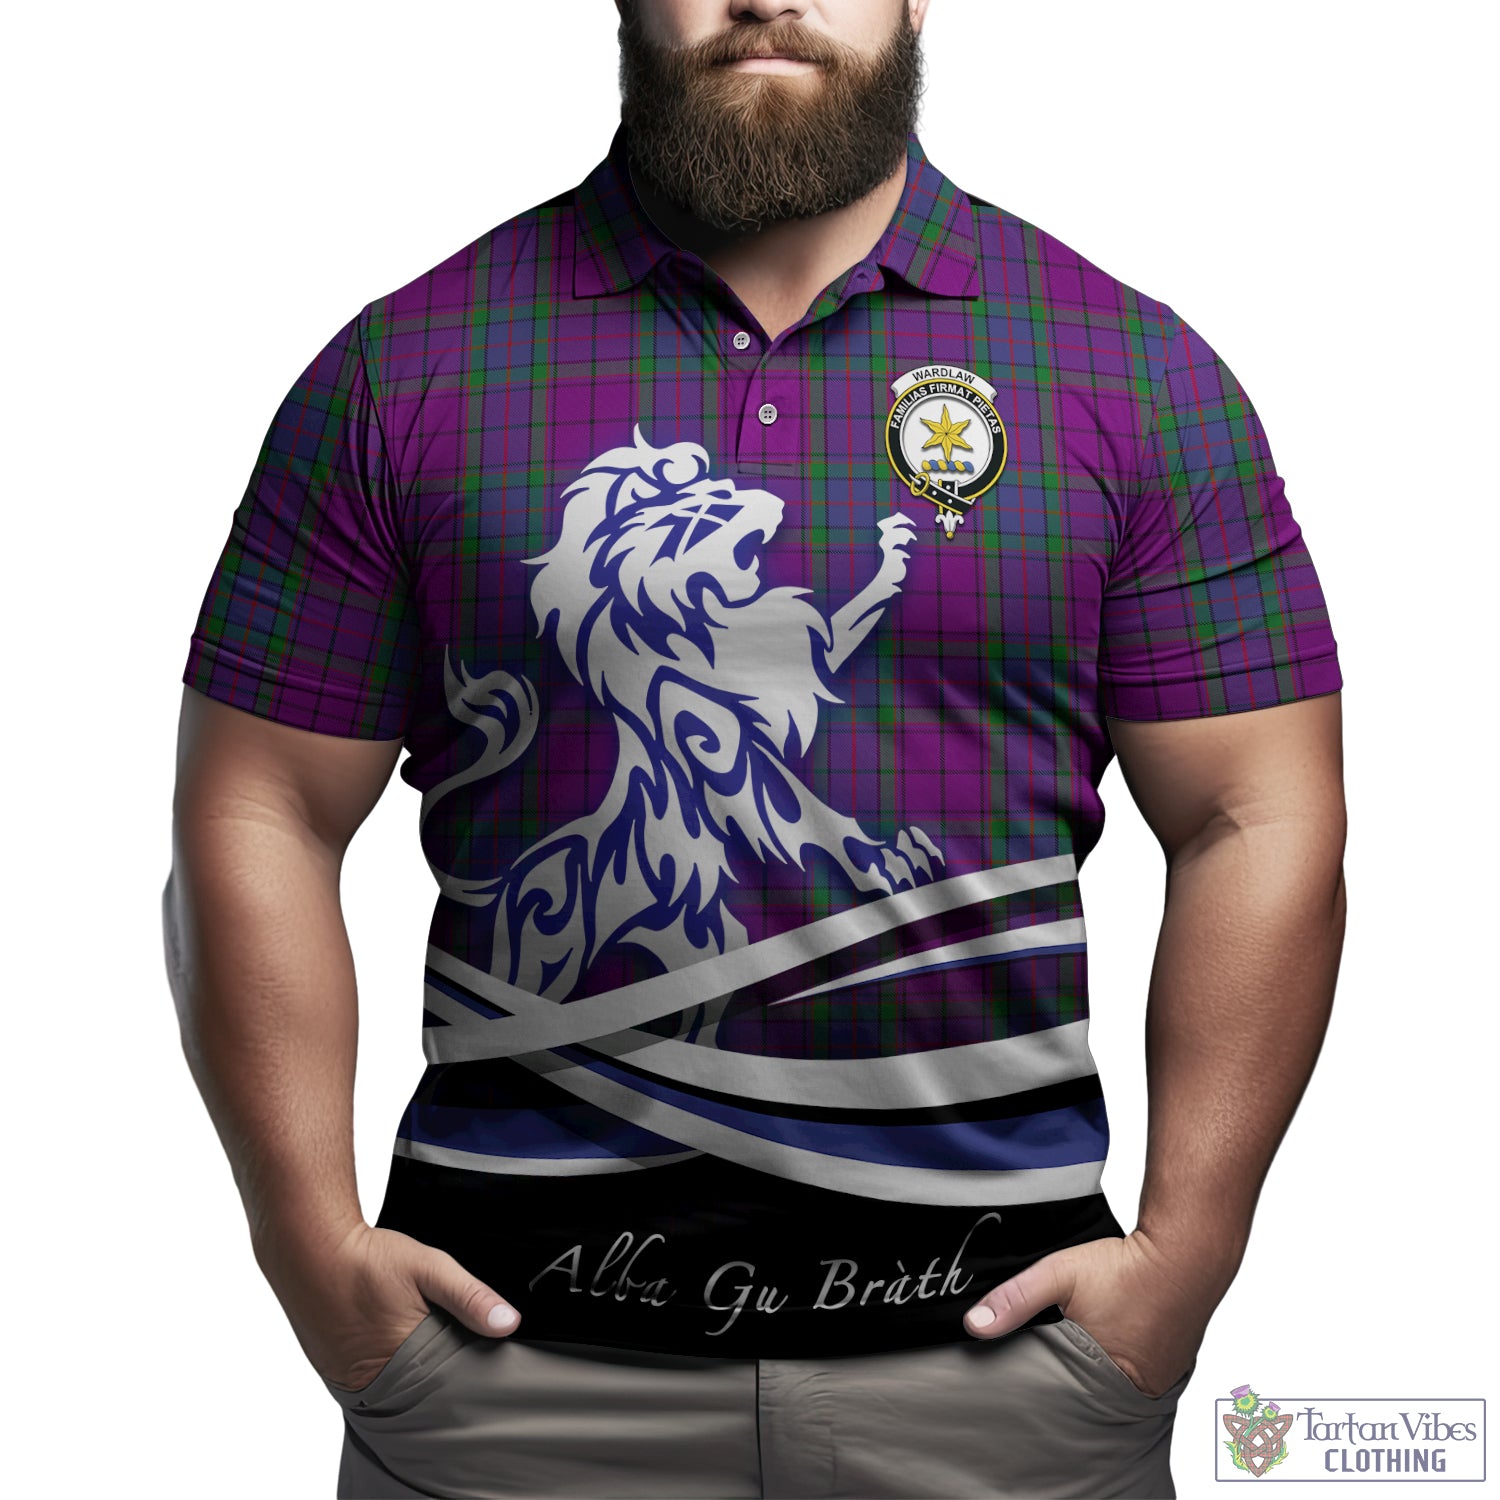 wardlaw-tartan-polo-shirt-with-alba-gu-brath-regal-lion-emblem